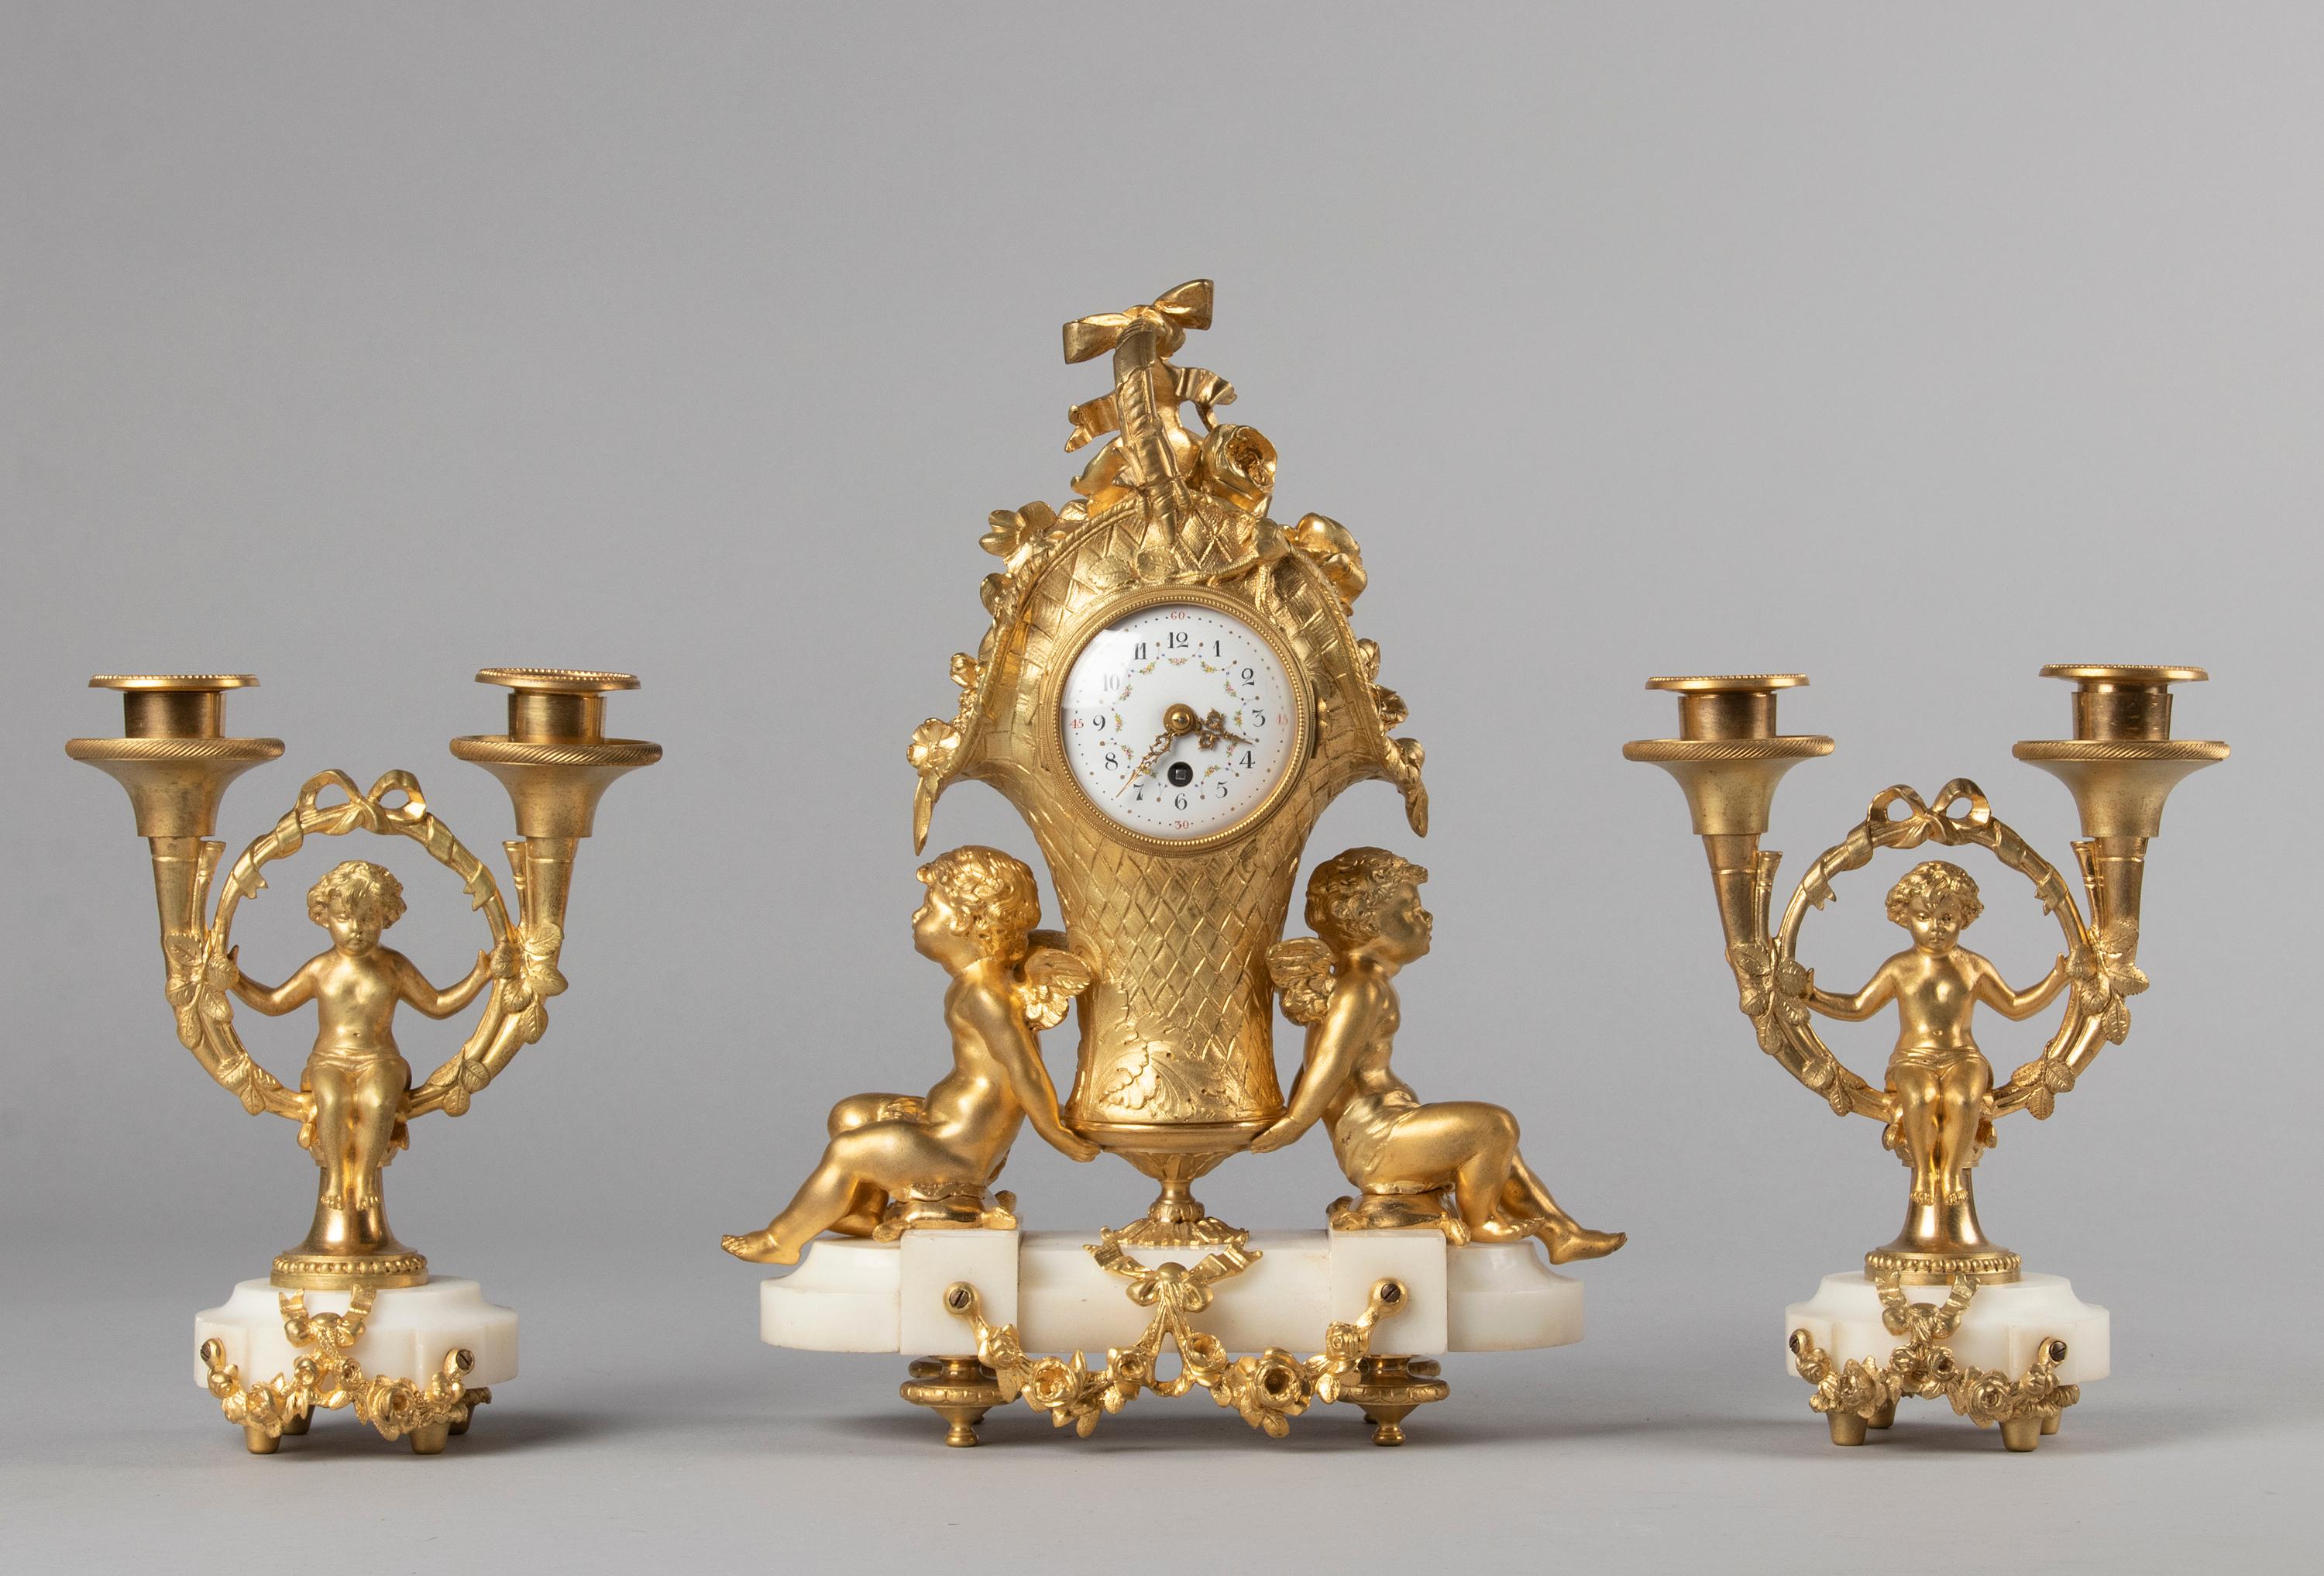 Une très belle horloge de cheminée figurative de style Louis XVI avec des chandeliers assortis. La pendule est coulée en bronze et a une finition ormolu, le cadran est en fer émaillé. Whiting sur un socle en marbre blanc. Richement décoré